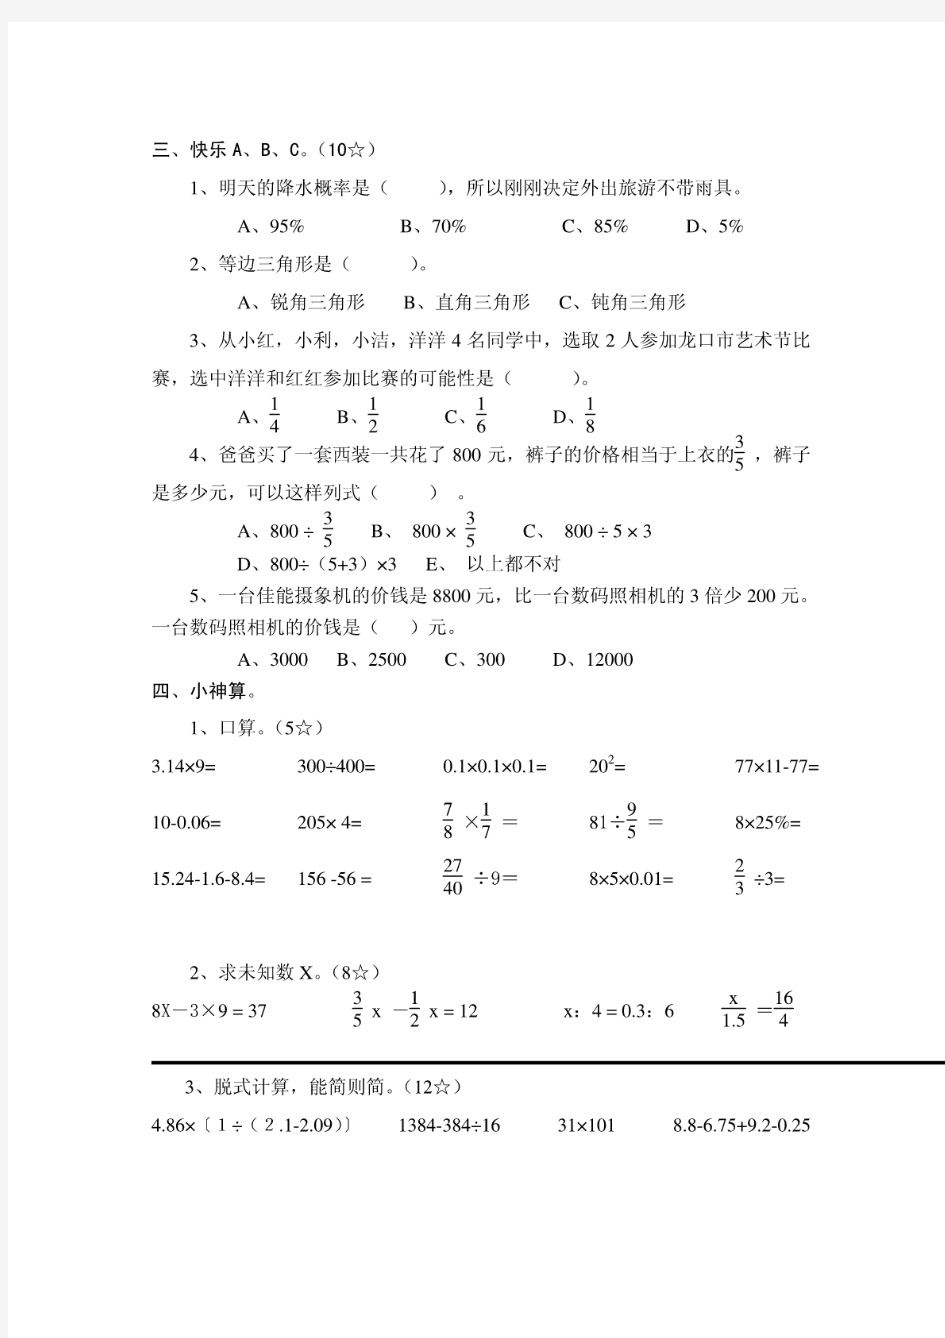 鲁教版小学数学五年级期末测试题(下册)